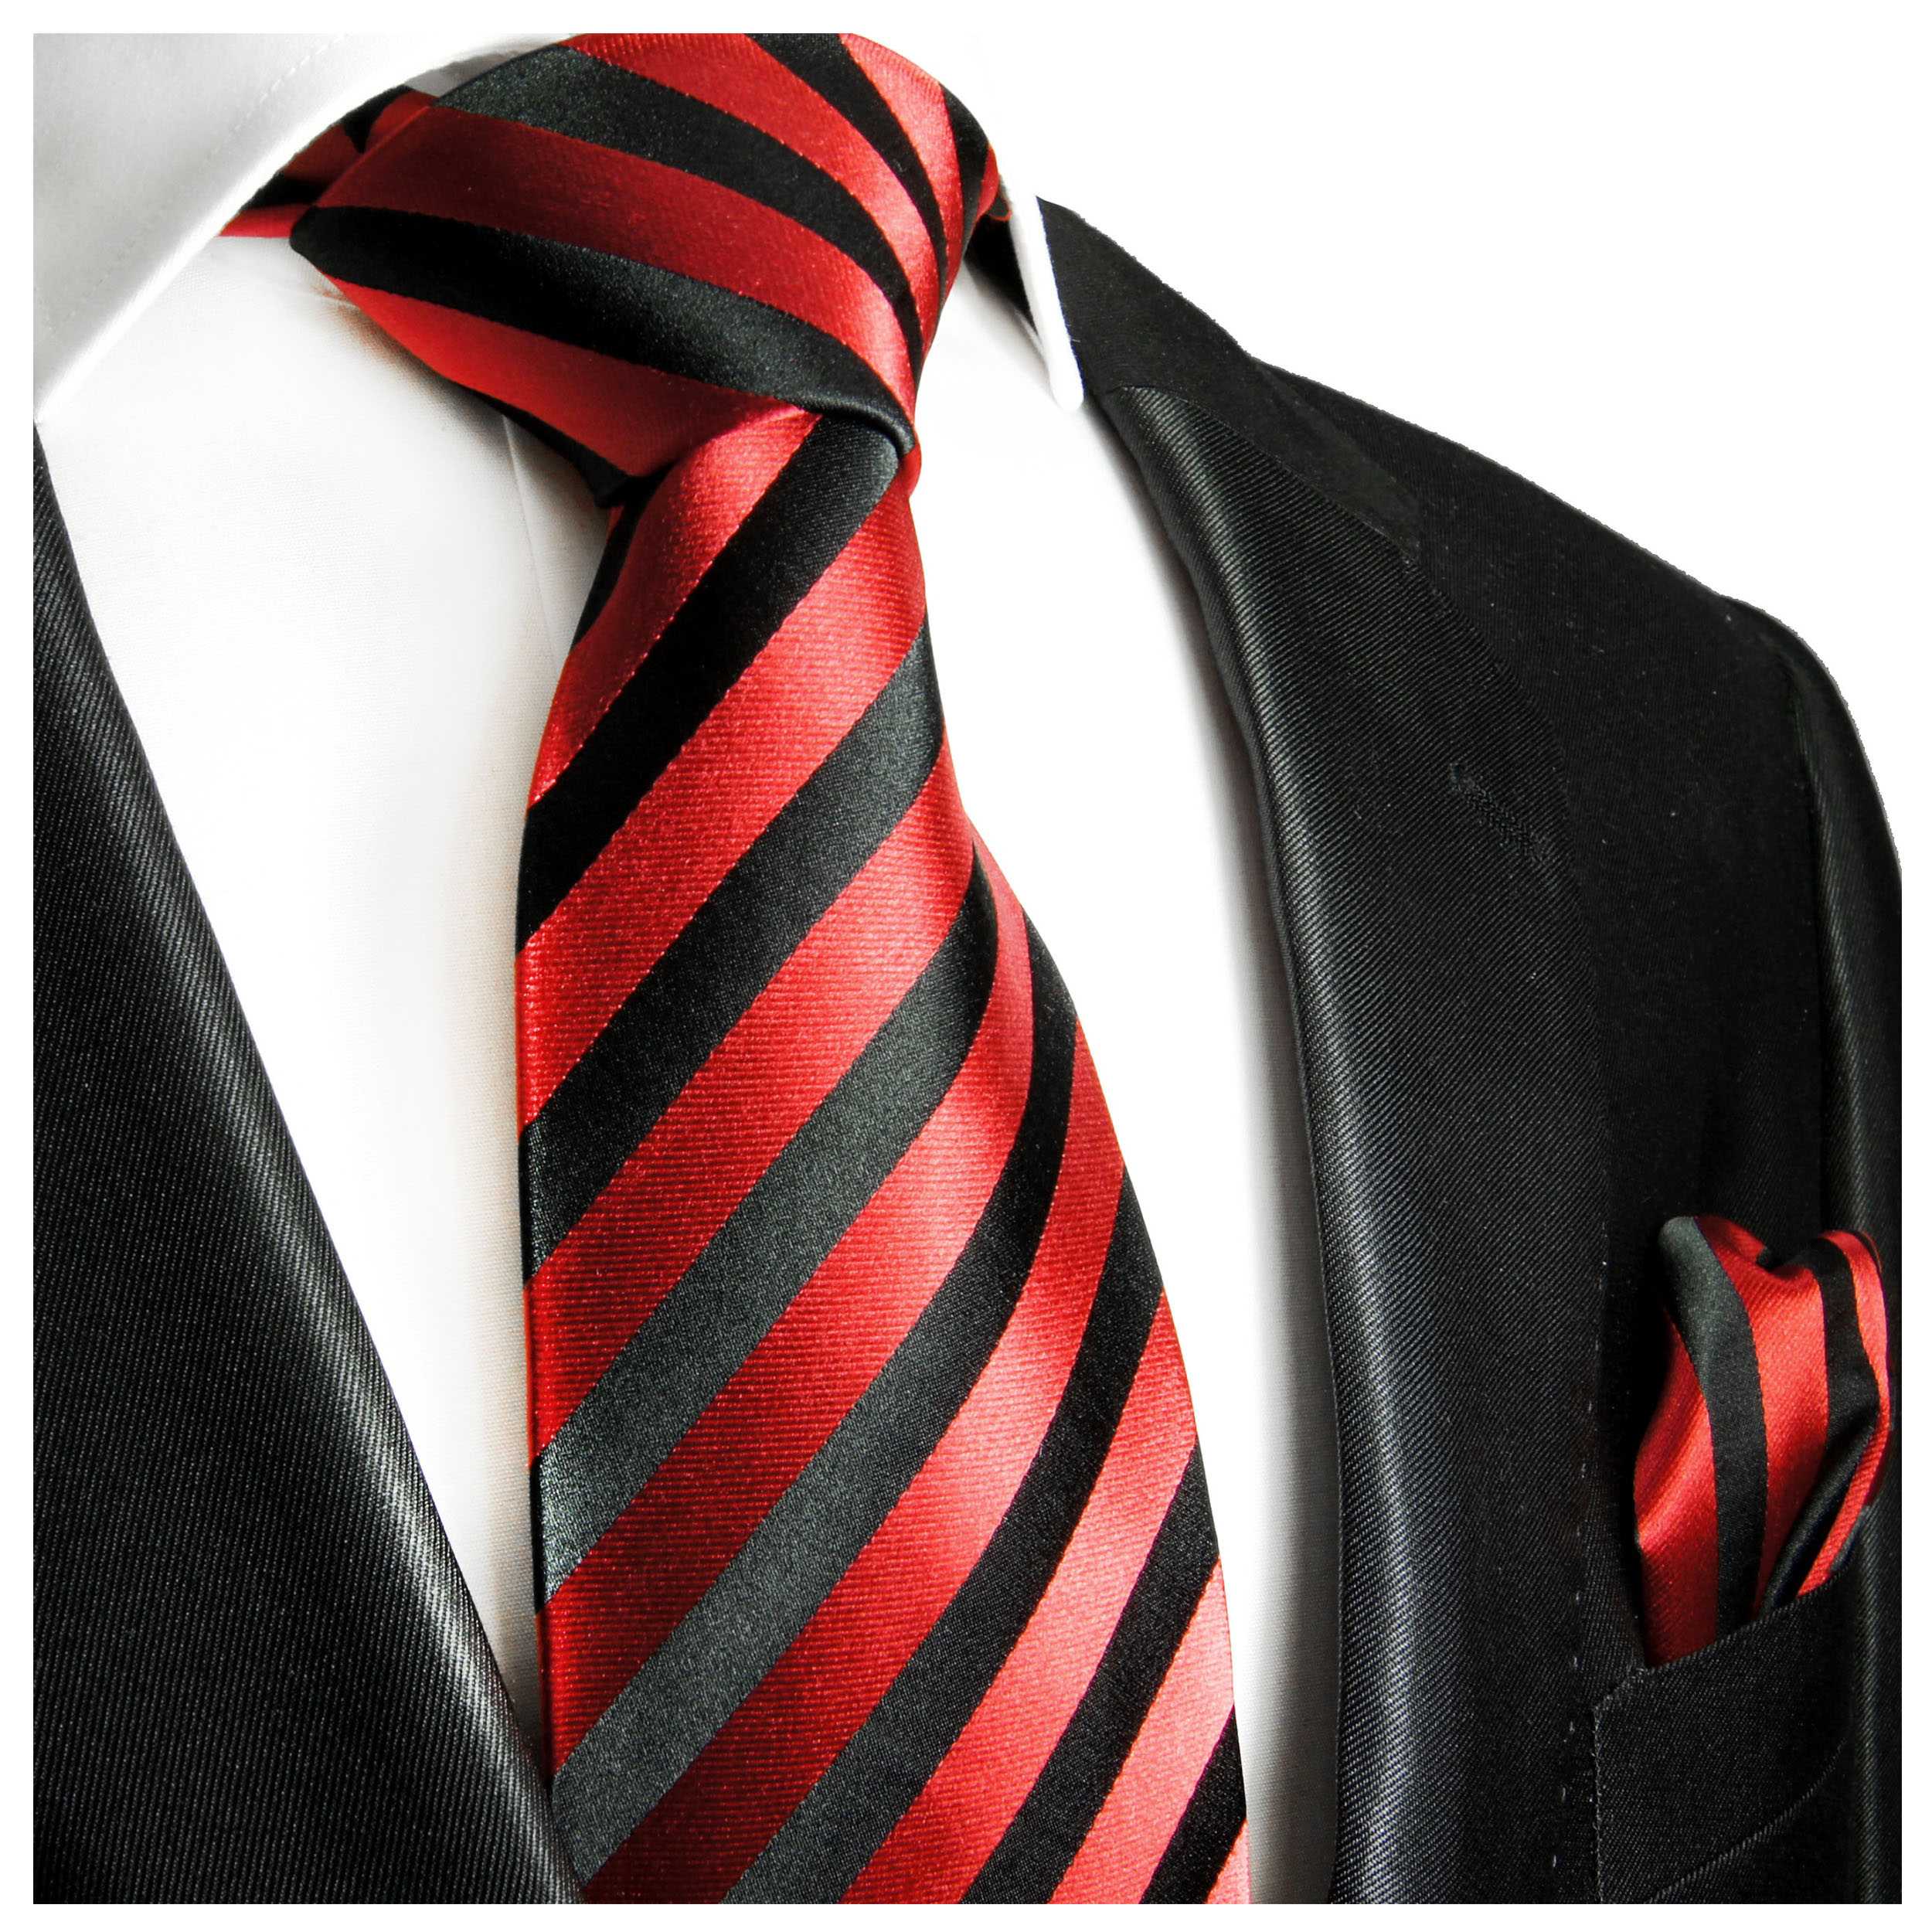 Какой длины должен быть галстук у мужчины по этикету?